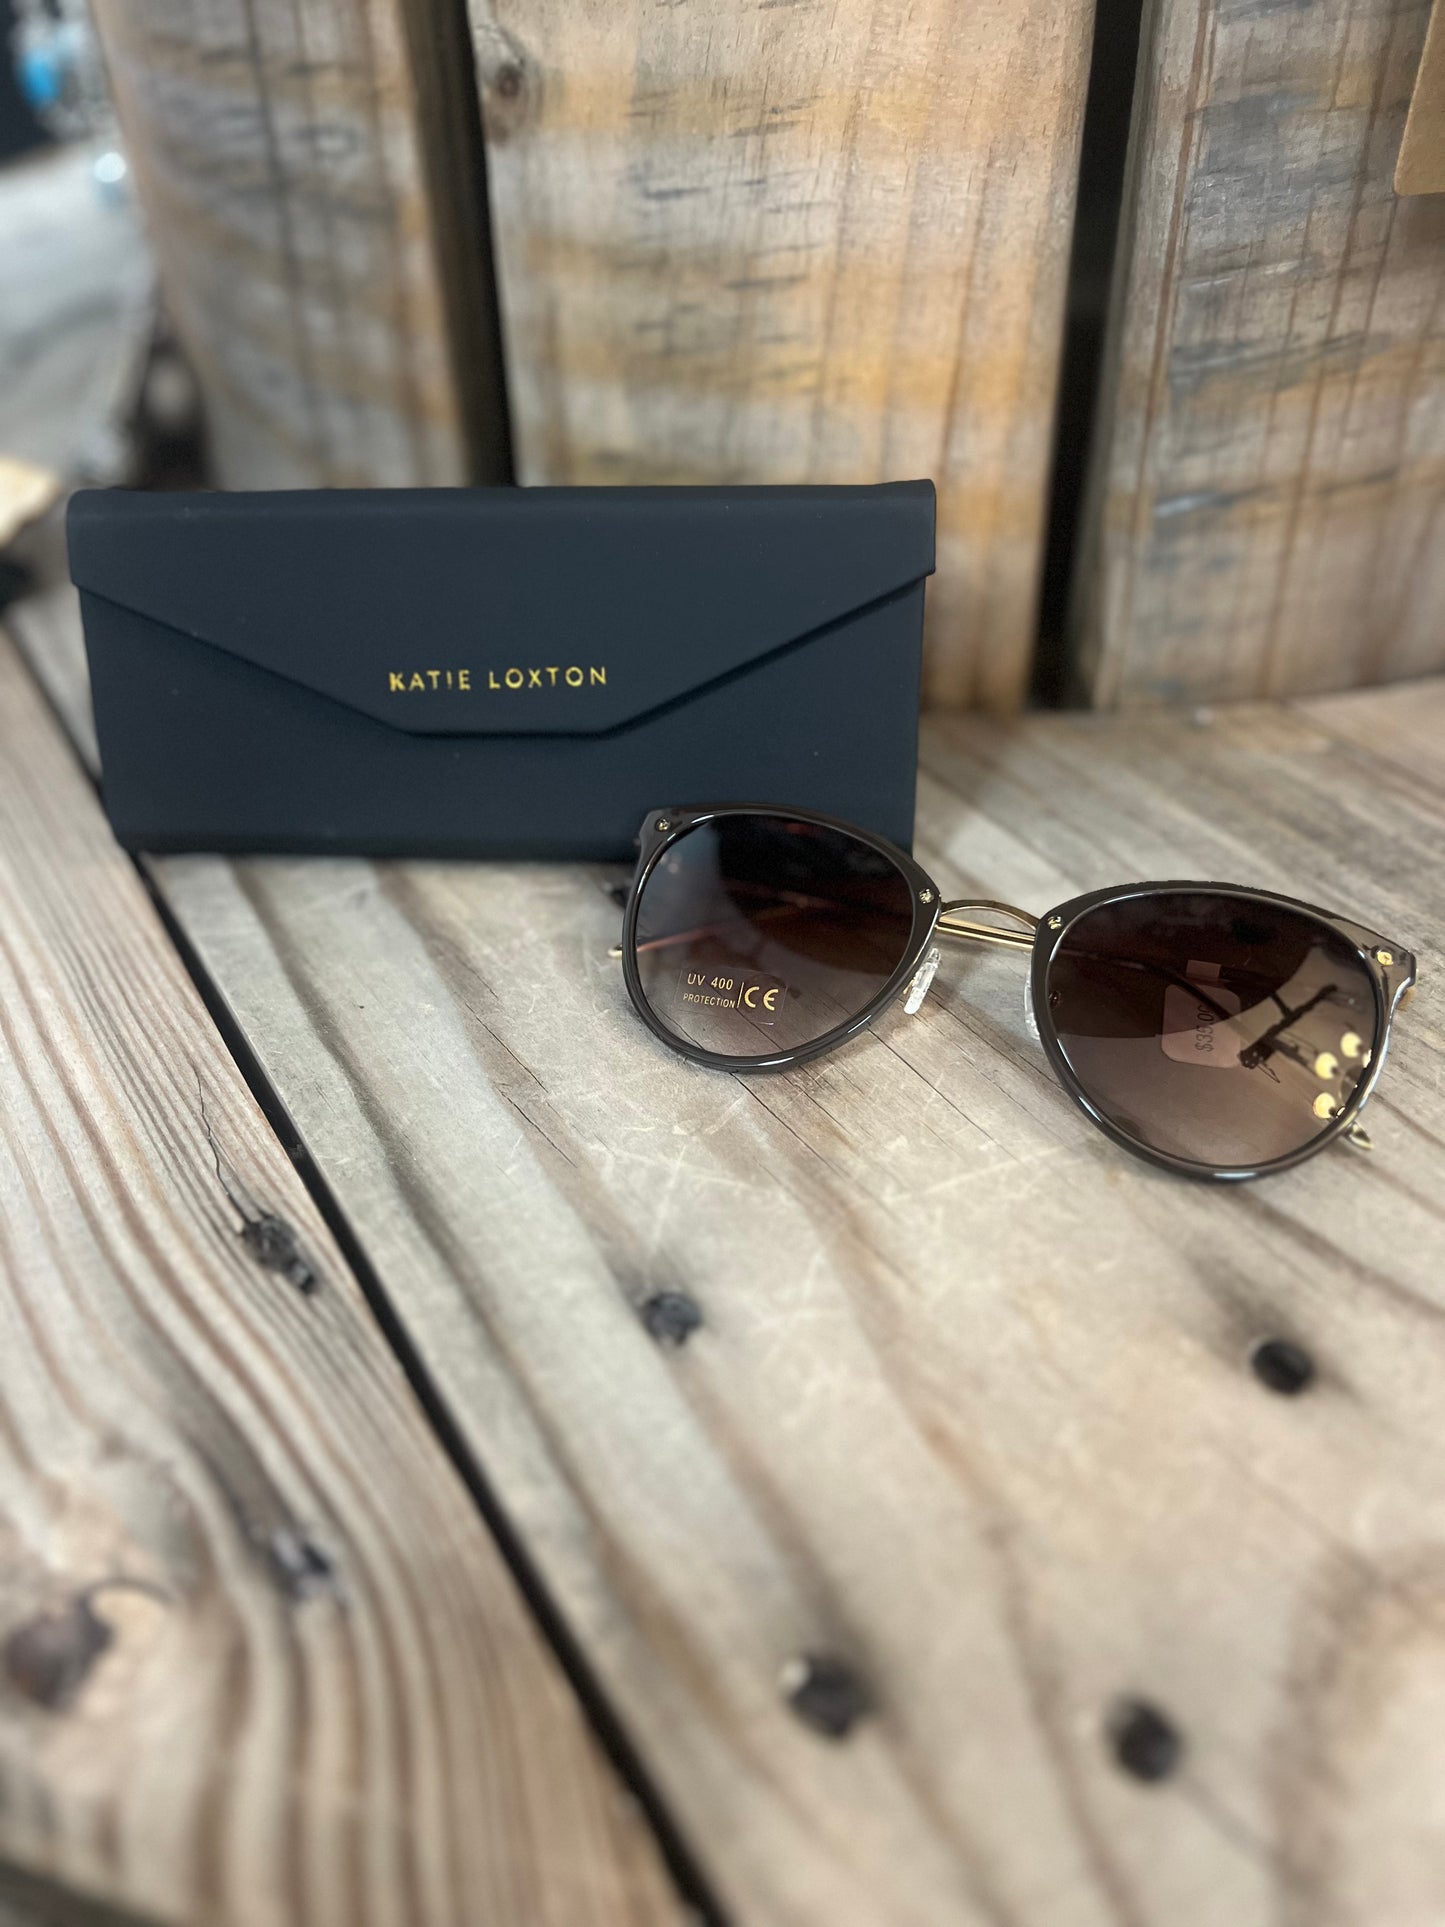 Katie Loxton Sunglasses